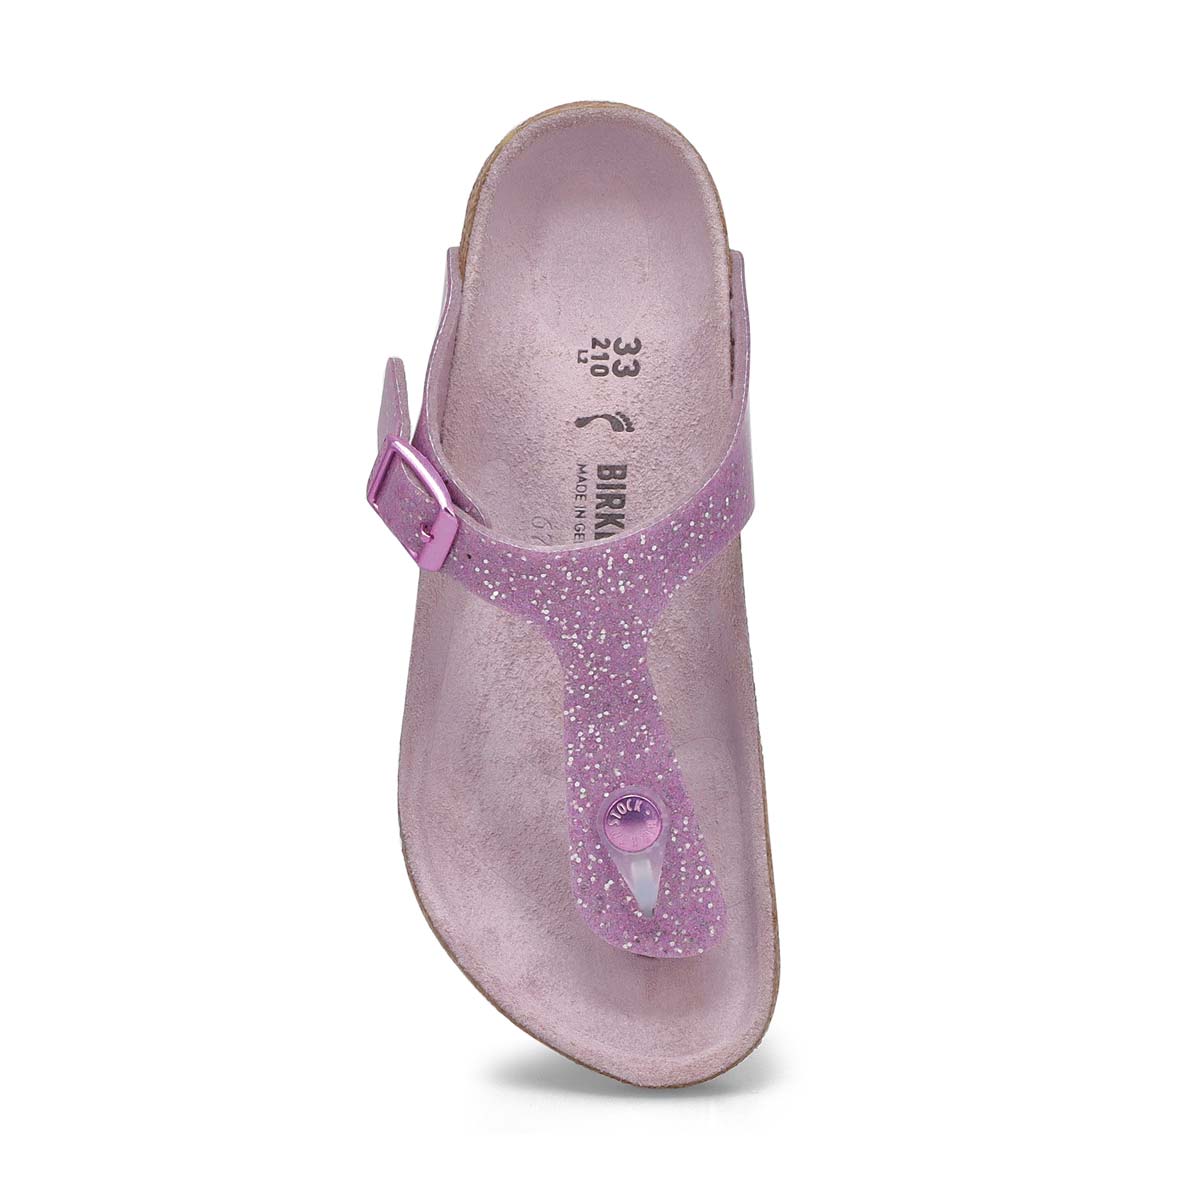 Girls' Gizeh BF Narrow Sandal - Sparkle Lavender